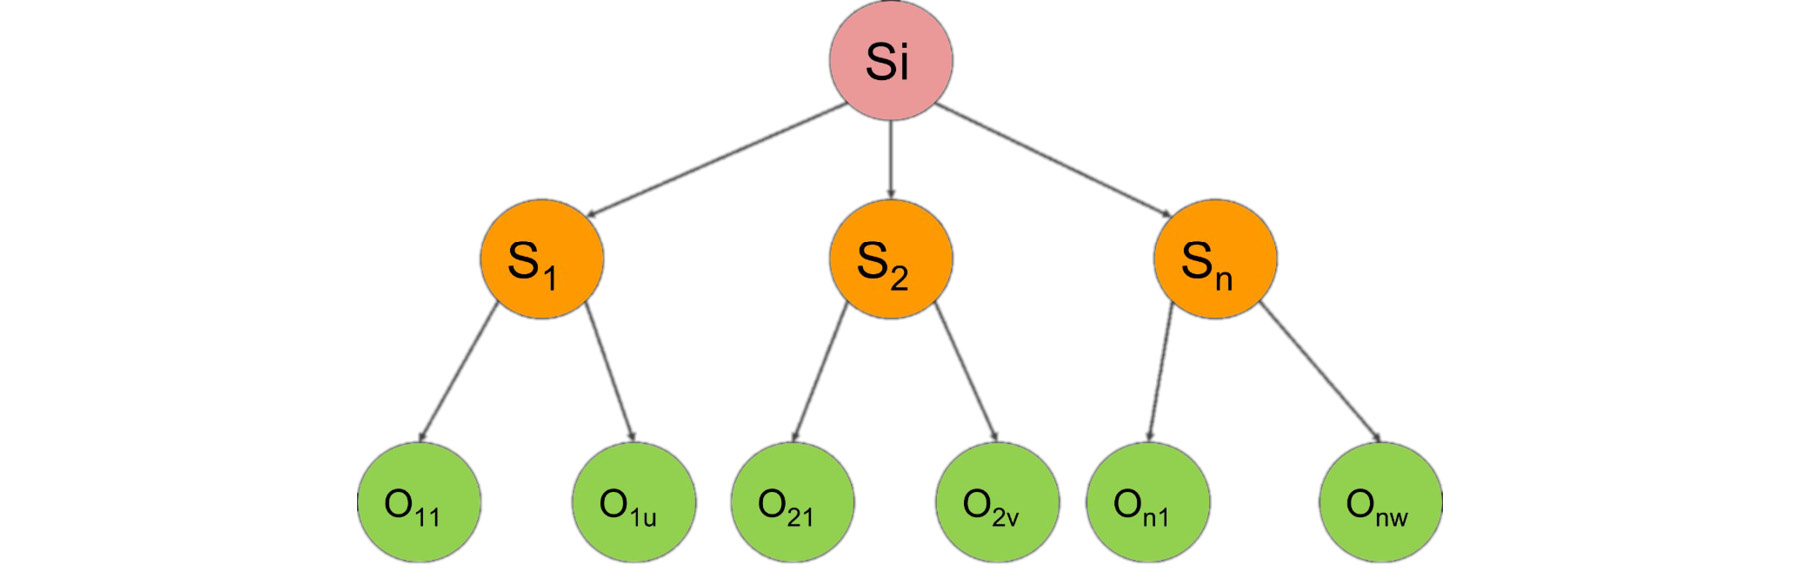 Figure 2.7 Tree diagram denoting parent-successor relationships